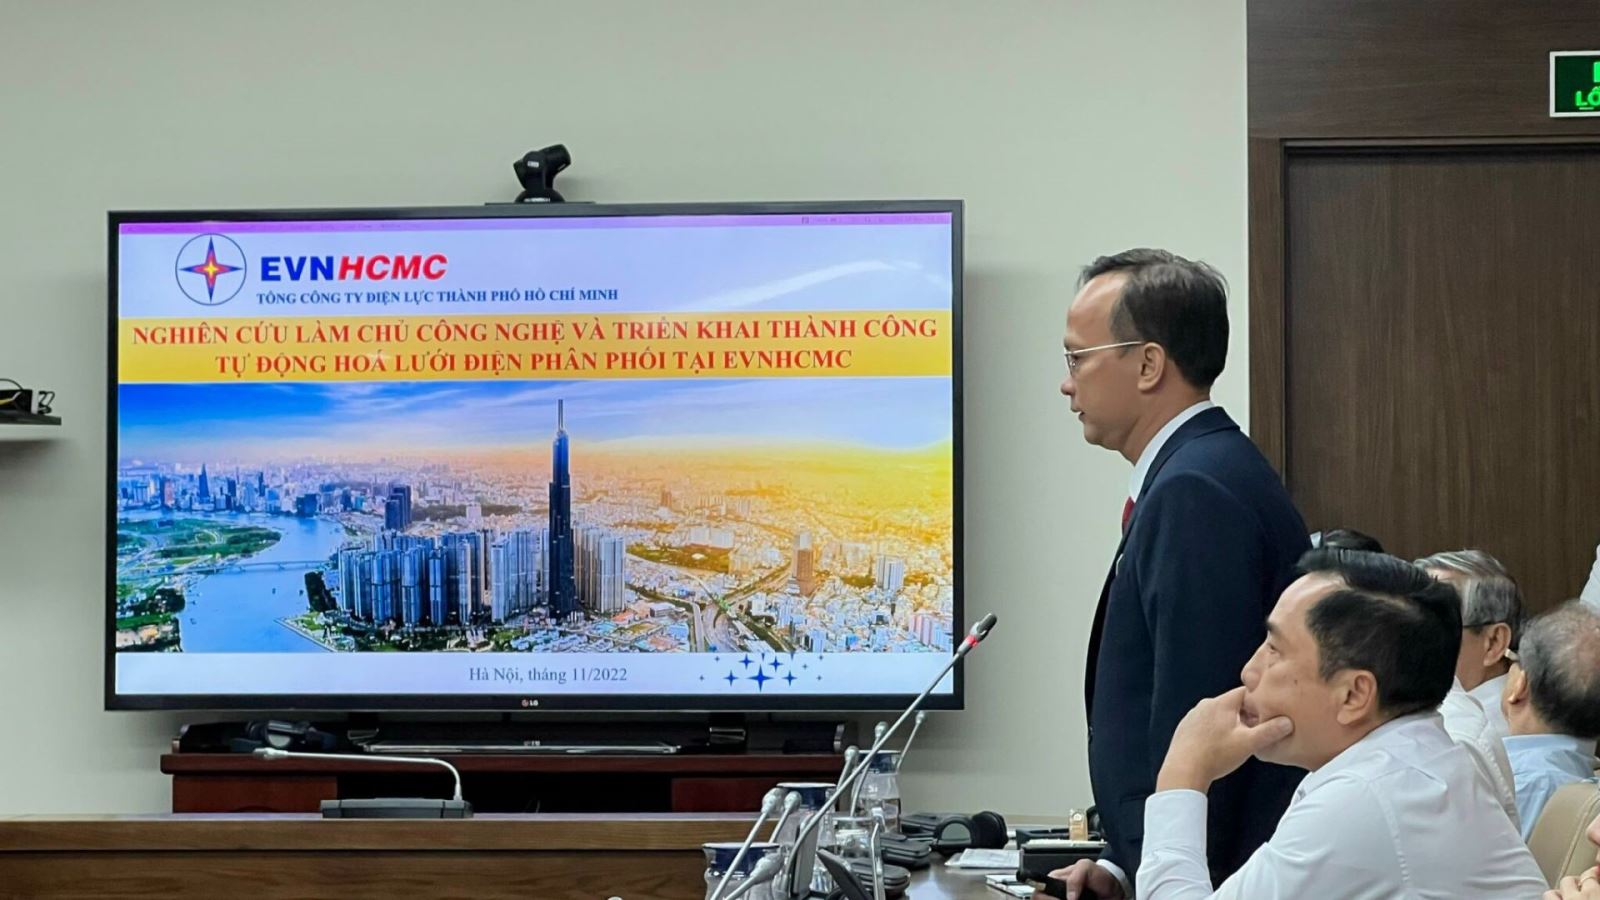 Ông Lê Hoàng Nhân – Phó giám đốc Trung tâm điều độ hệ thống điện EVNHCMC trình bày đề tài “Nghiên cứu làm chủ công nghệ và triển khai thành công tự động hoá lưới điện phân phối tại EVNHCMC”.